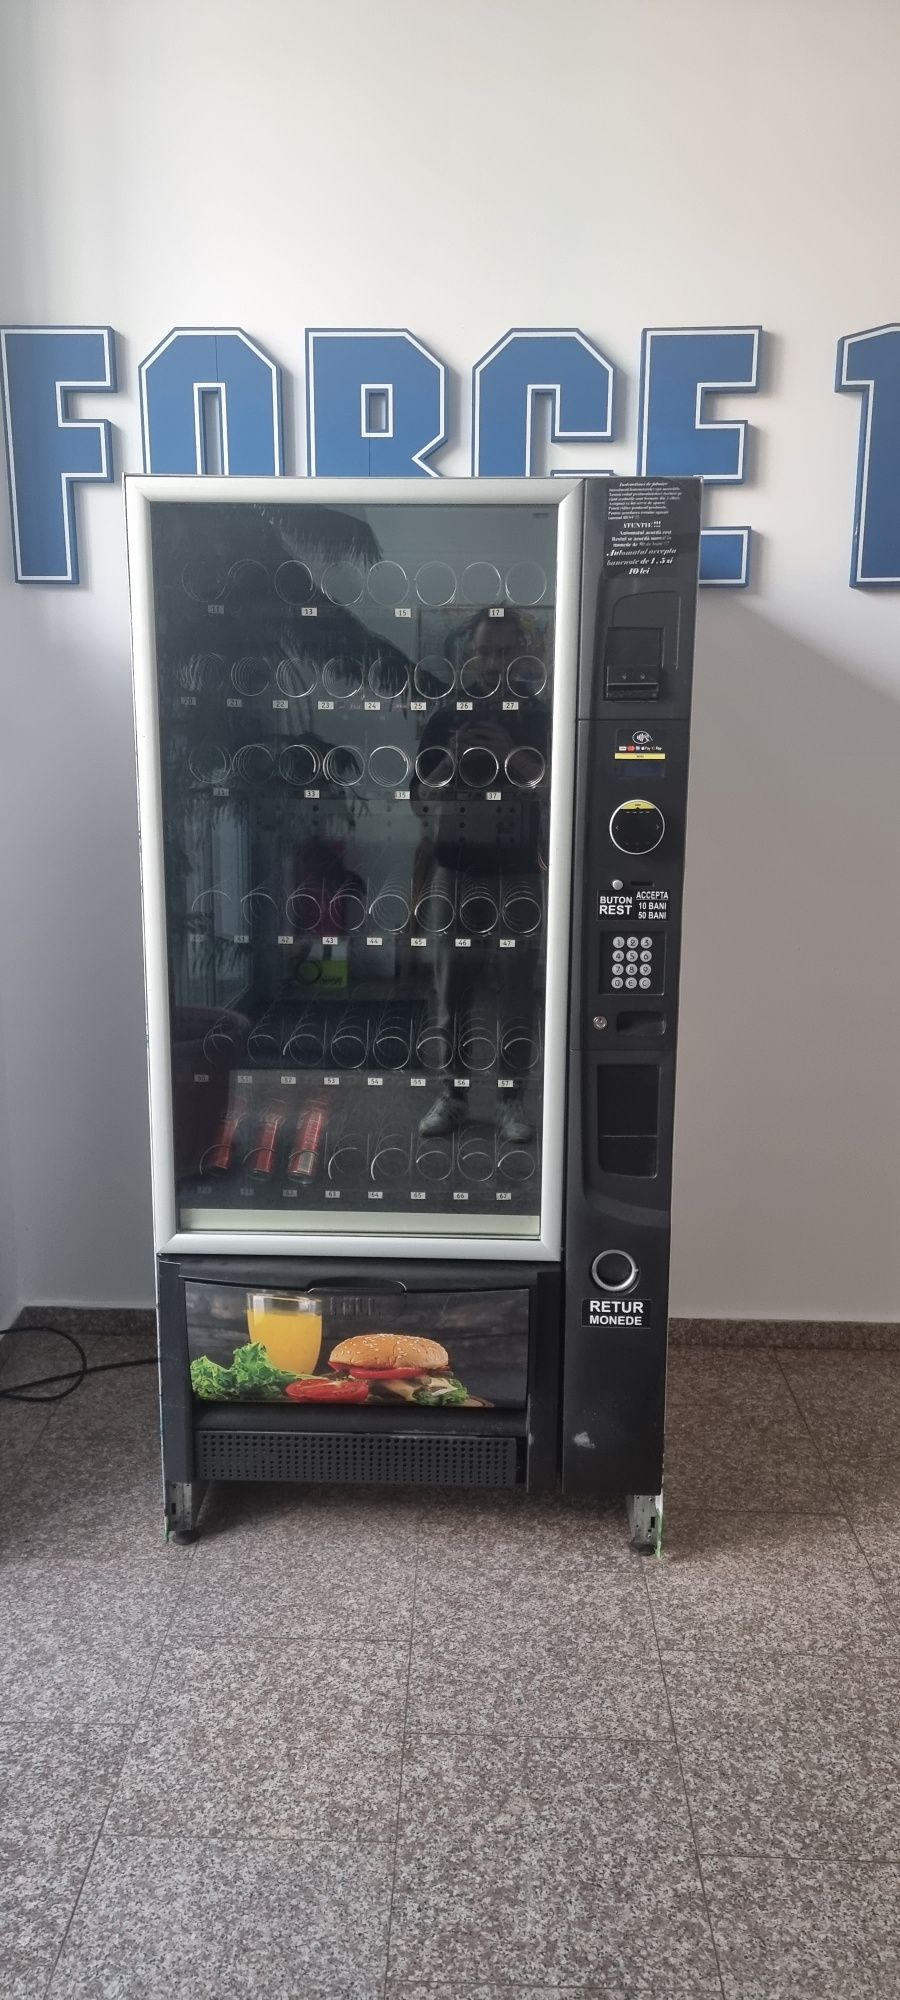 Automat/tonomat snack vending